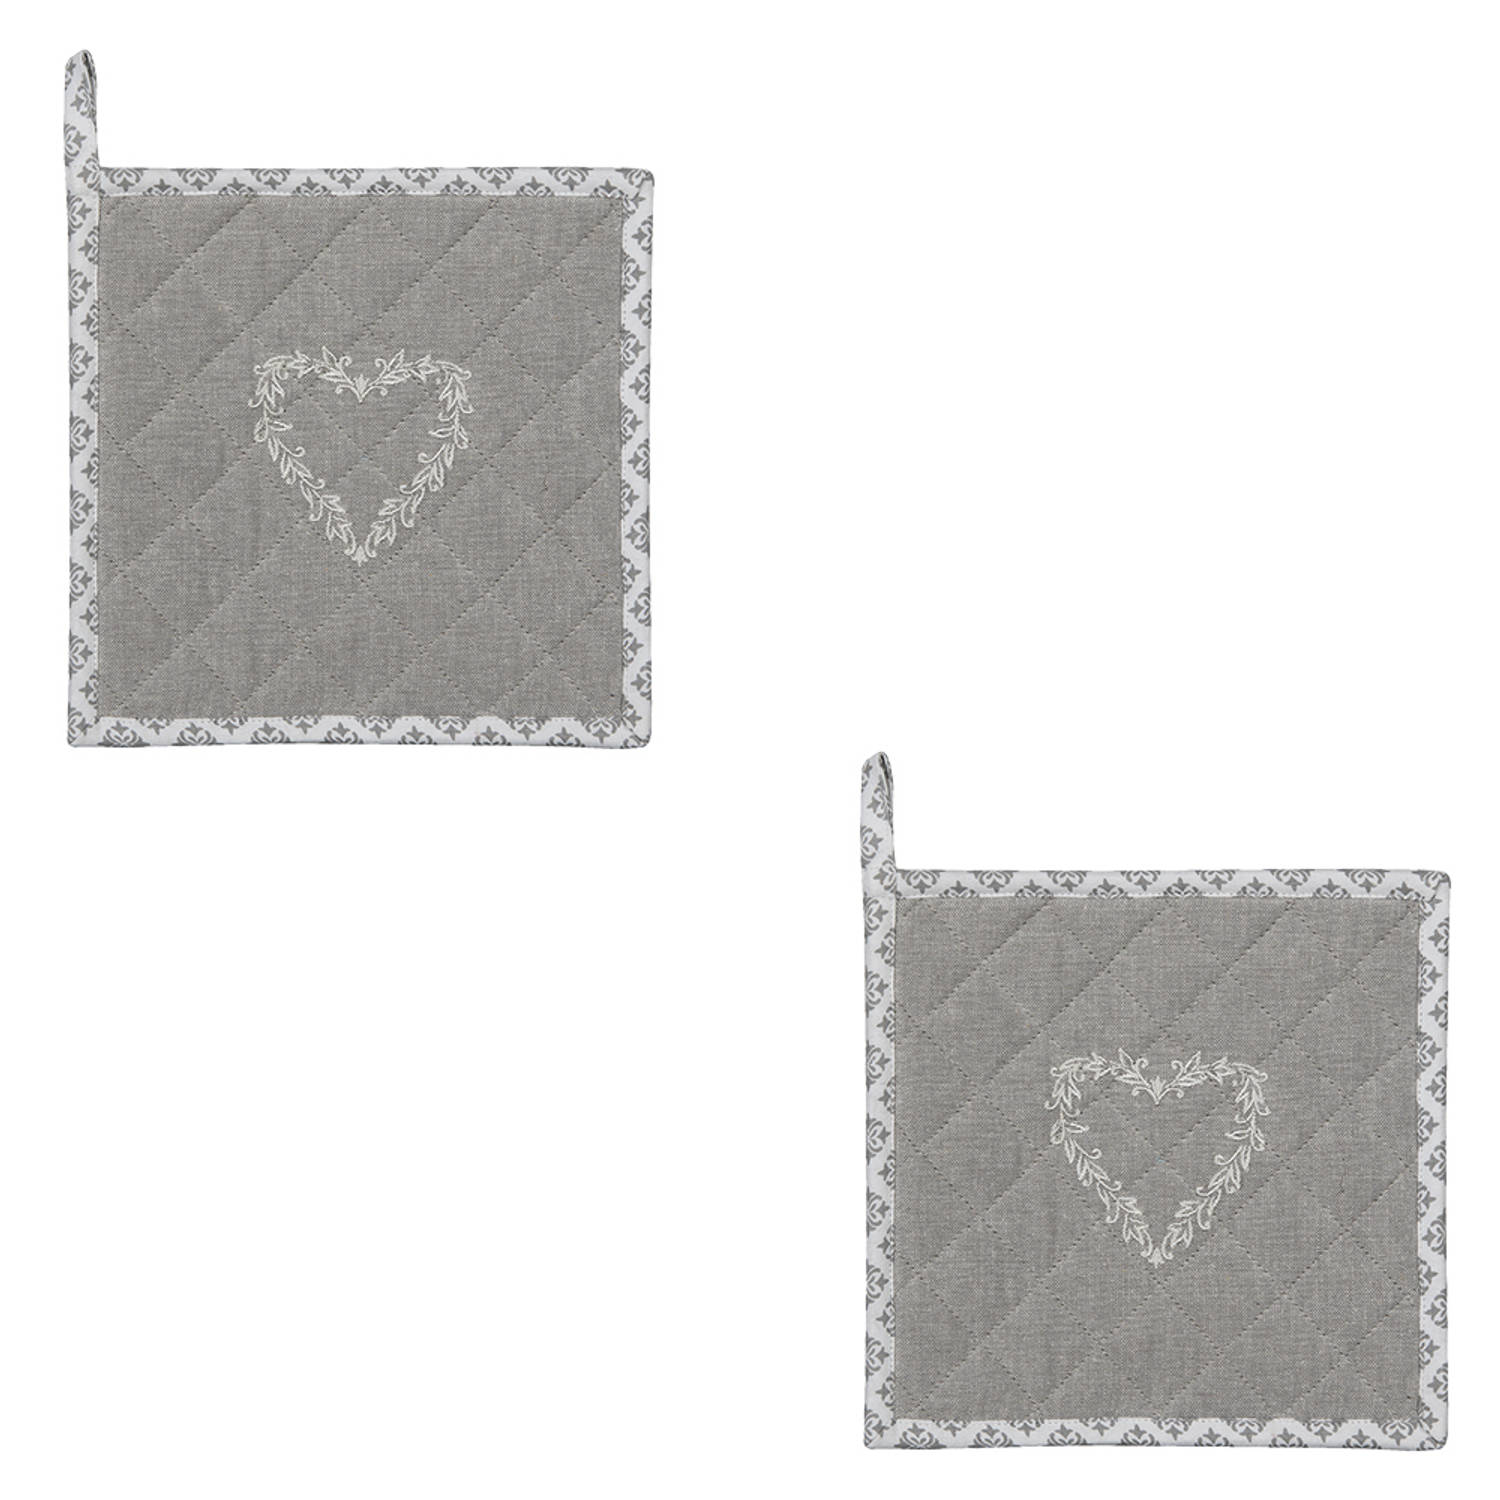 HAES DECO - Set van 2 Pannenlappen - formaat 20x20 cm - kleuren Grijs / Wit - van 100% Katoen - Collectie: Lovely Heart - Pannenlap